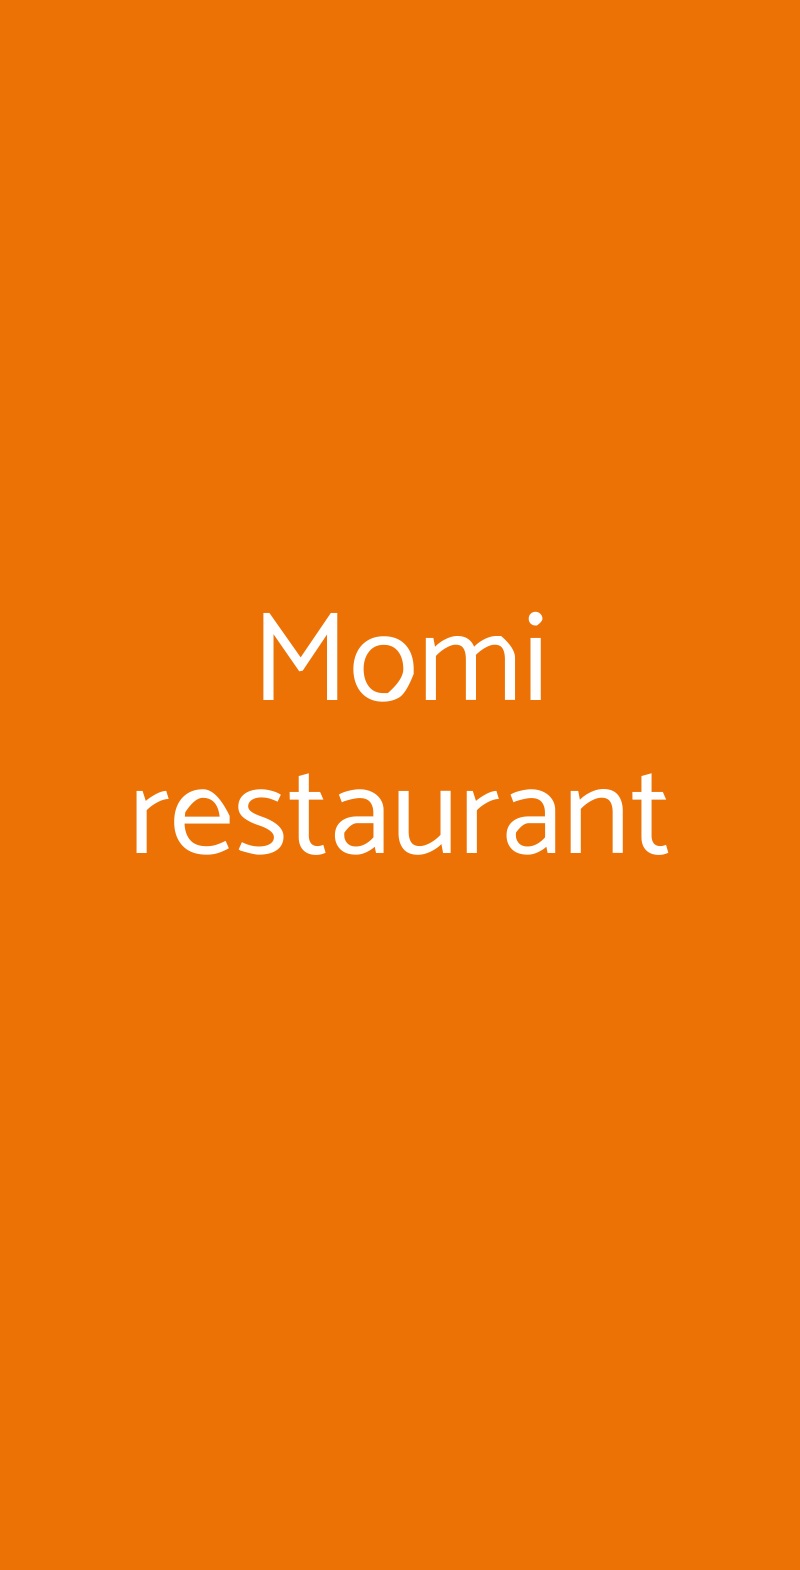 Momi restaurant Nove menù 1 pagina